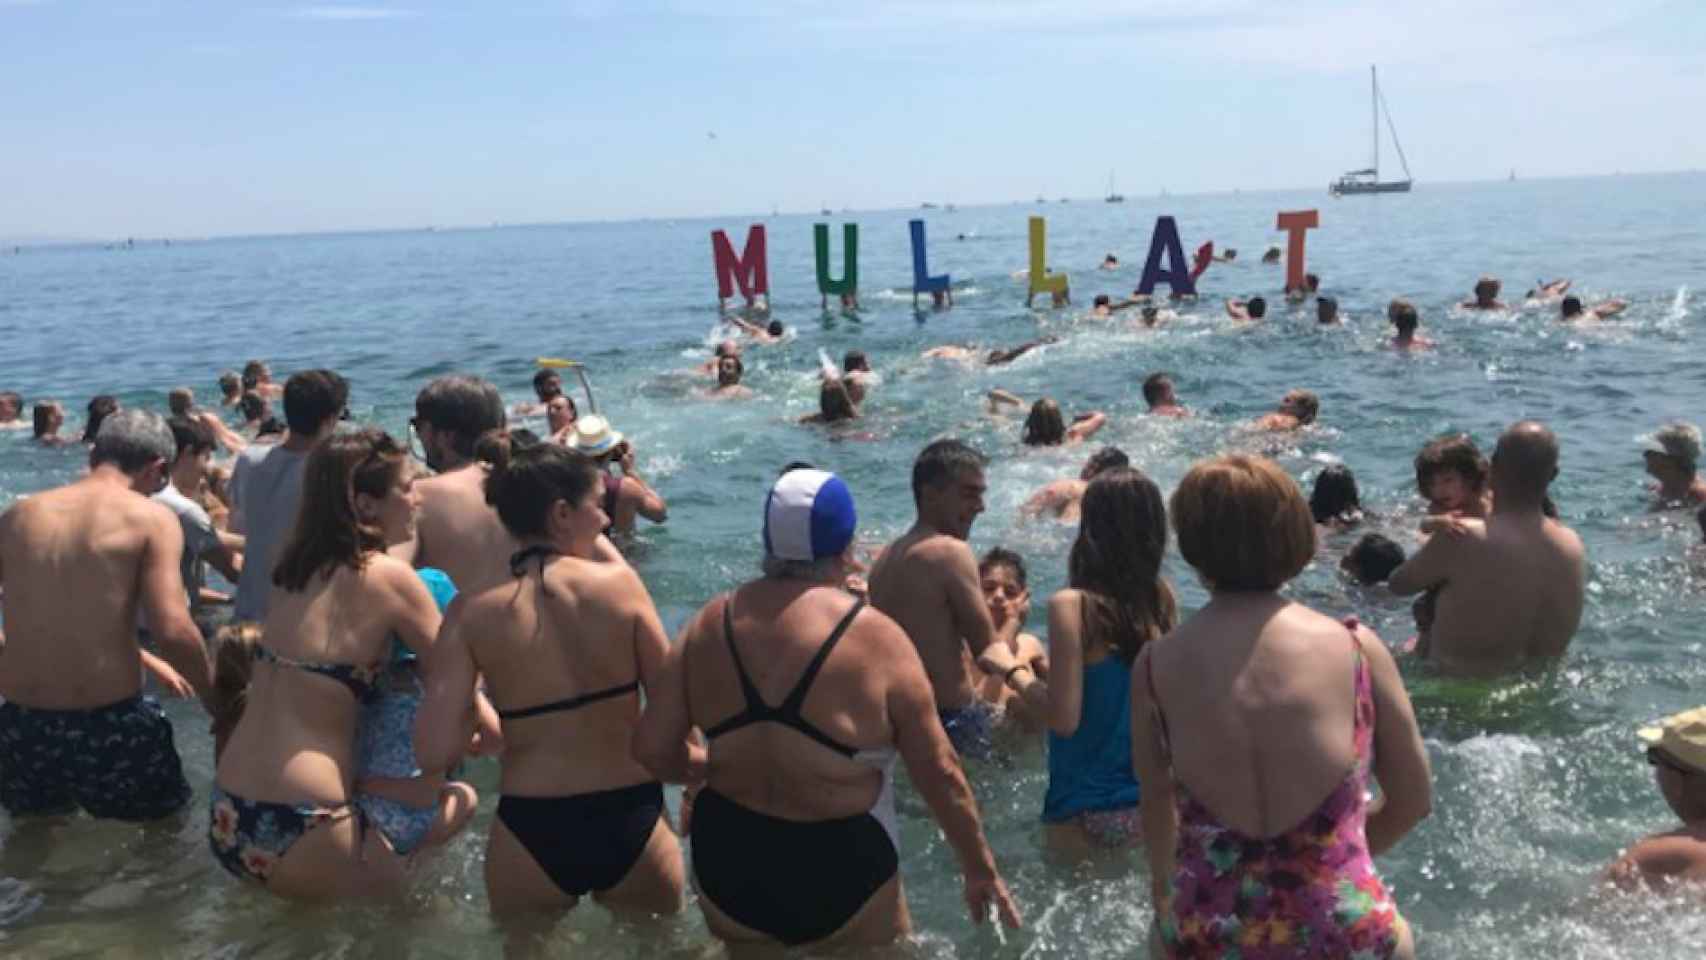 Una foto del acto 'Mulla't', celebrado en Barcelona para recaudar fondos por la esclerosis múltiple